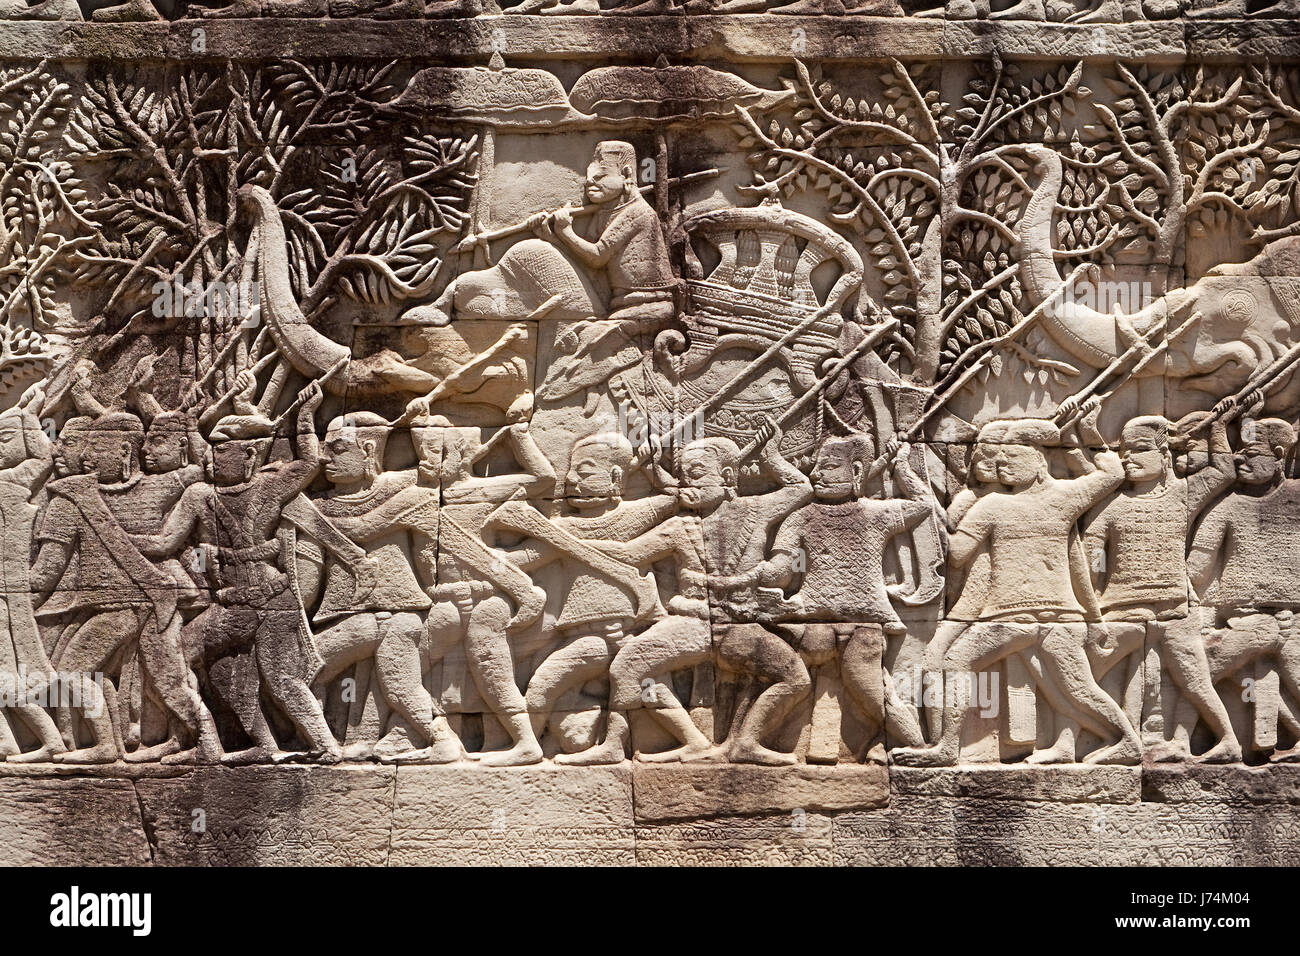 Le Cambodge de secours de l'art art culture historique de l'art travail tourisme en Asie pierre Banque D'Images